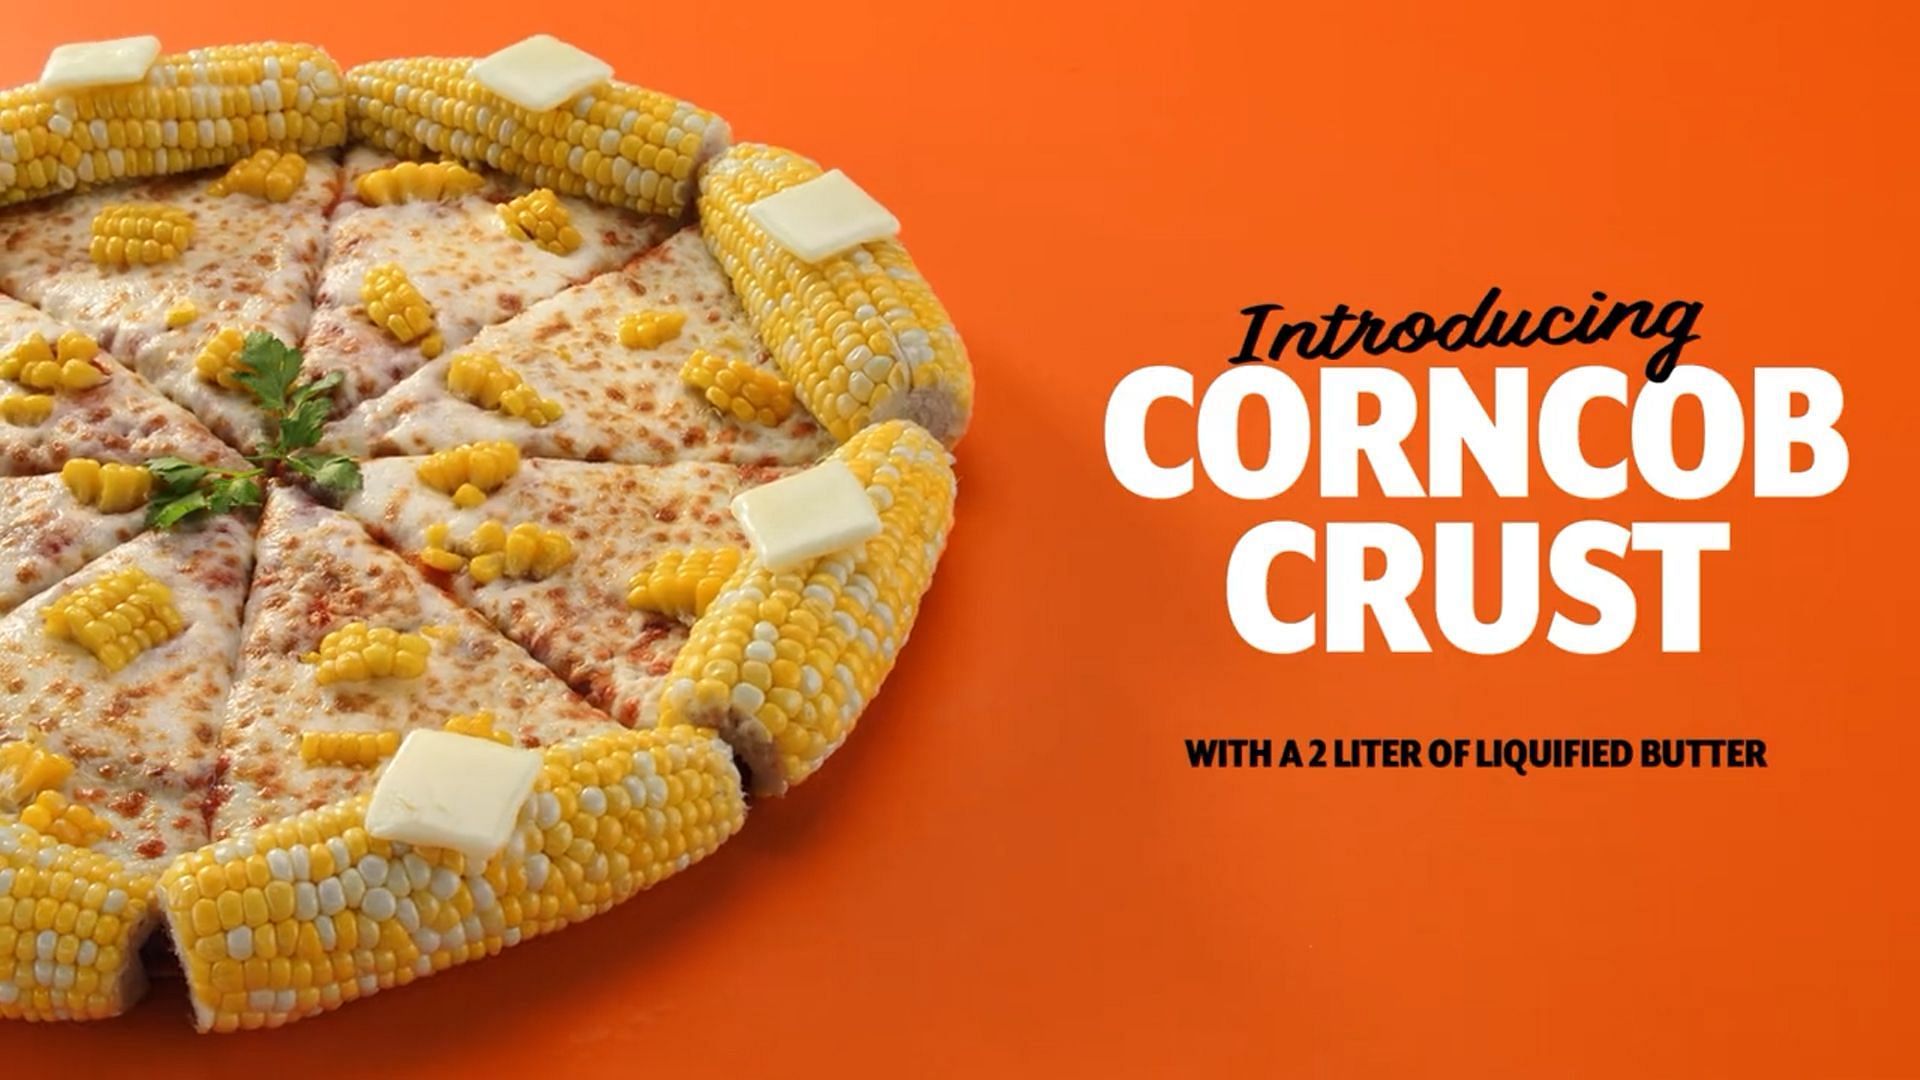 Little Caesars introduces a Corncob Crust Pizza (Image via Twitter/@littlecaesars)